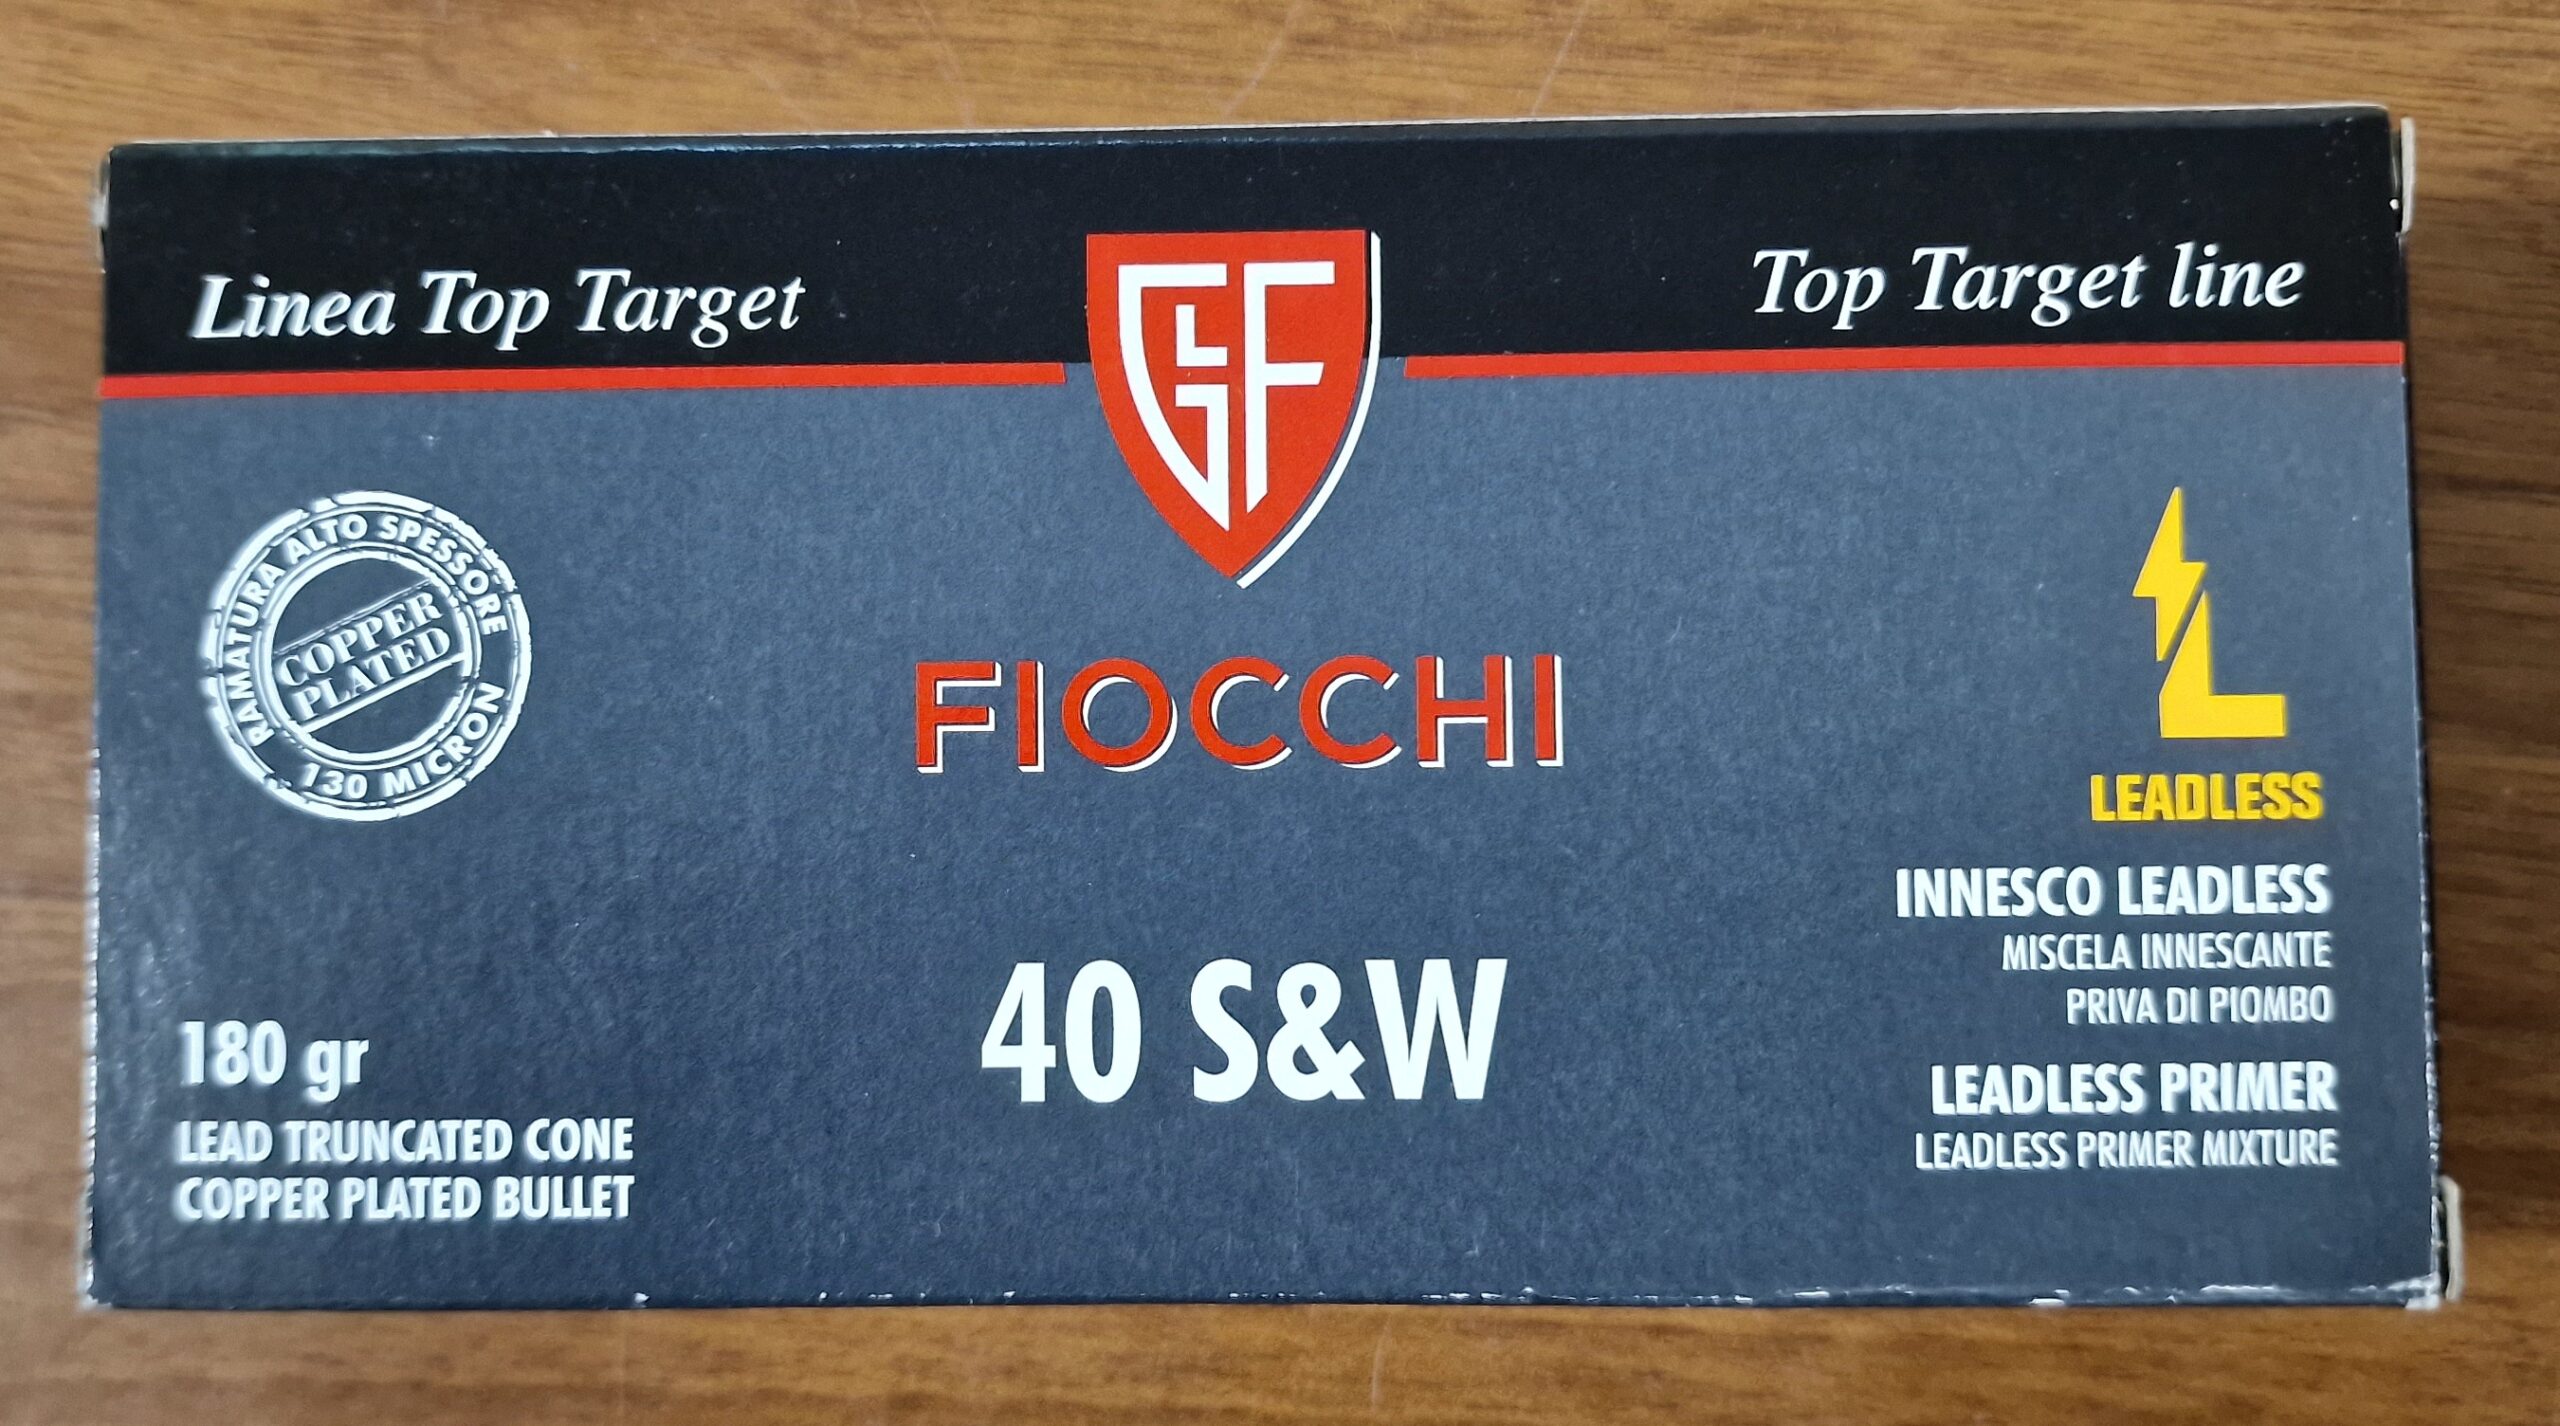 Fiocchi 40 S&W main image